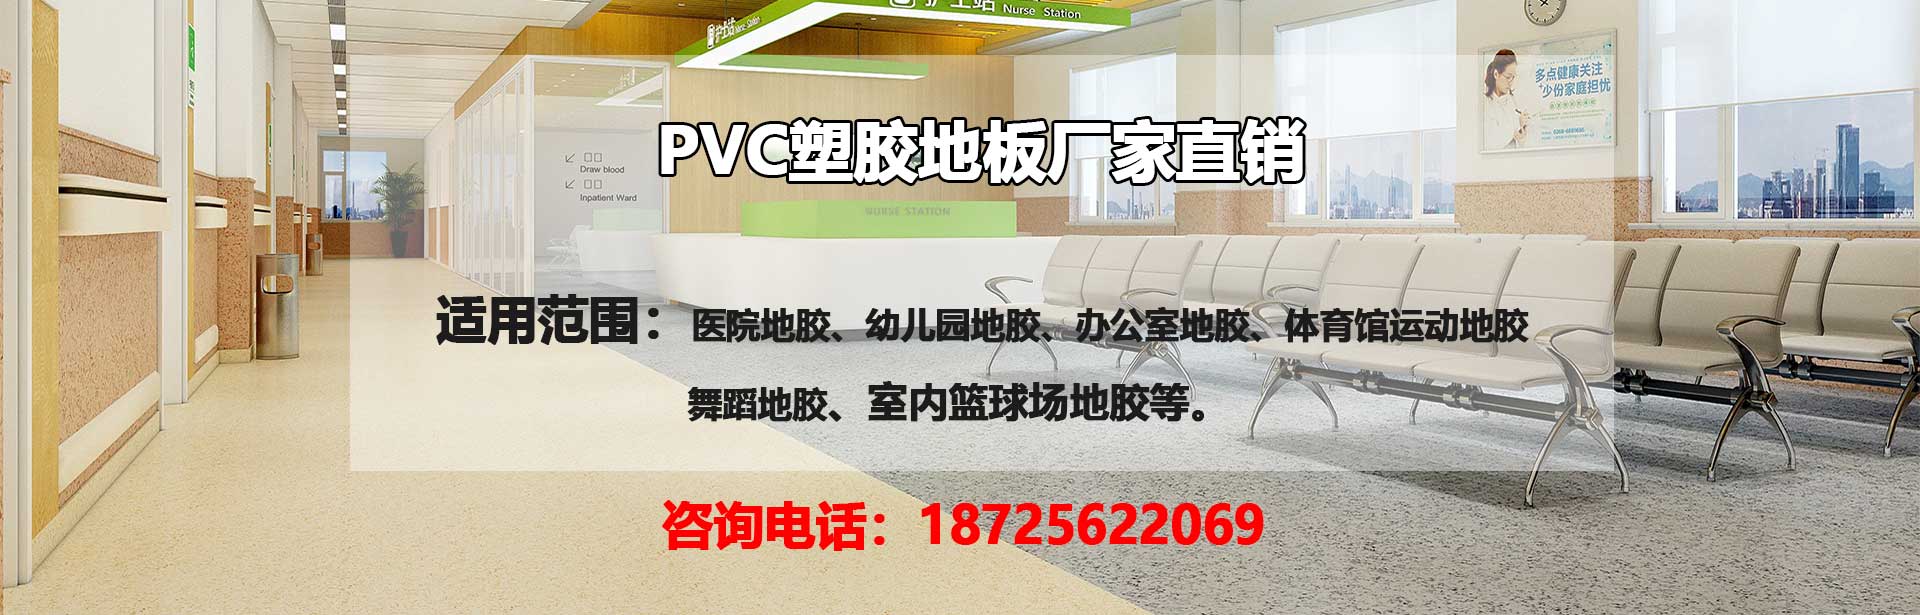 江门PVC塑胶地板